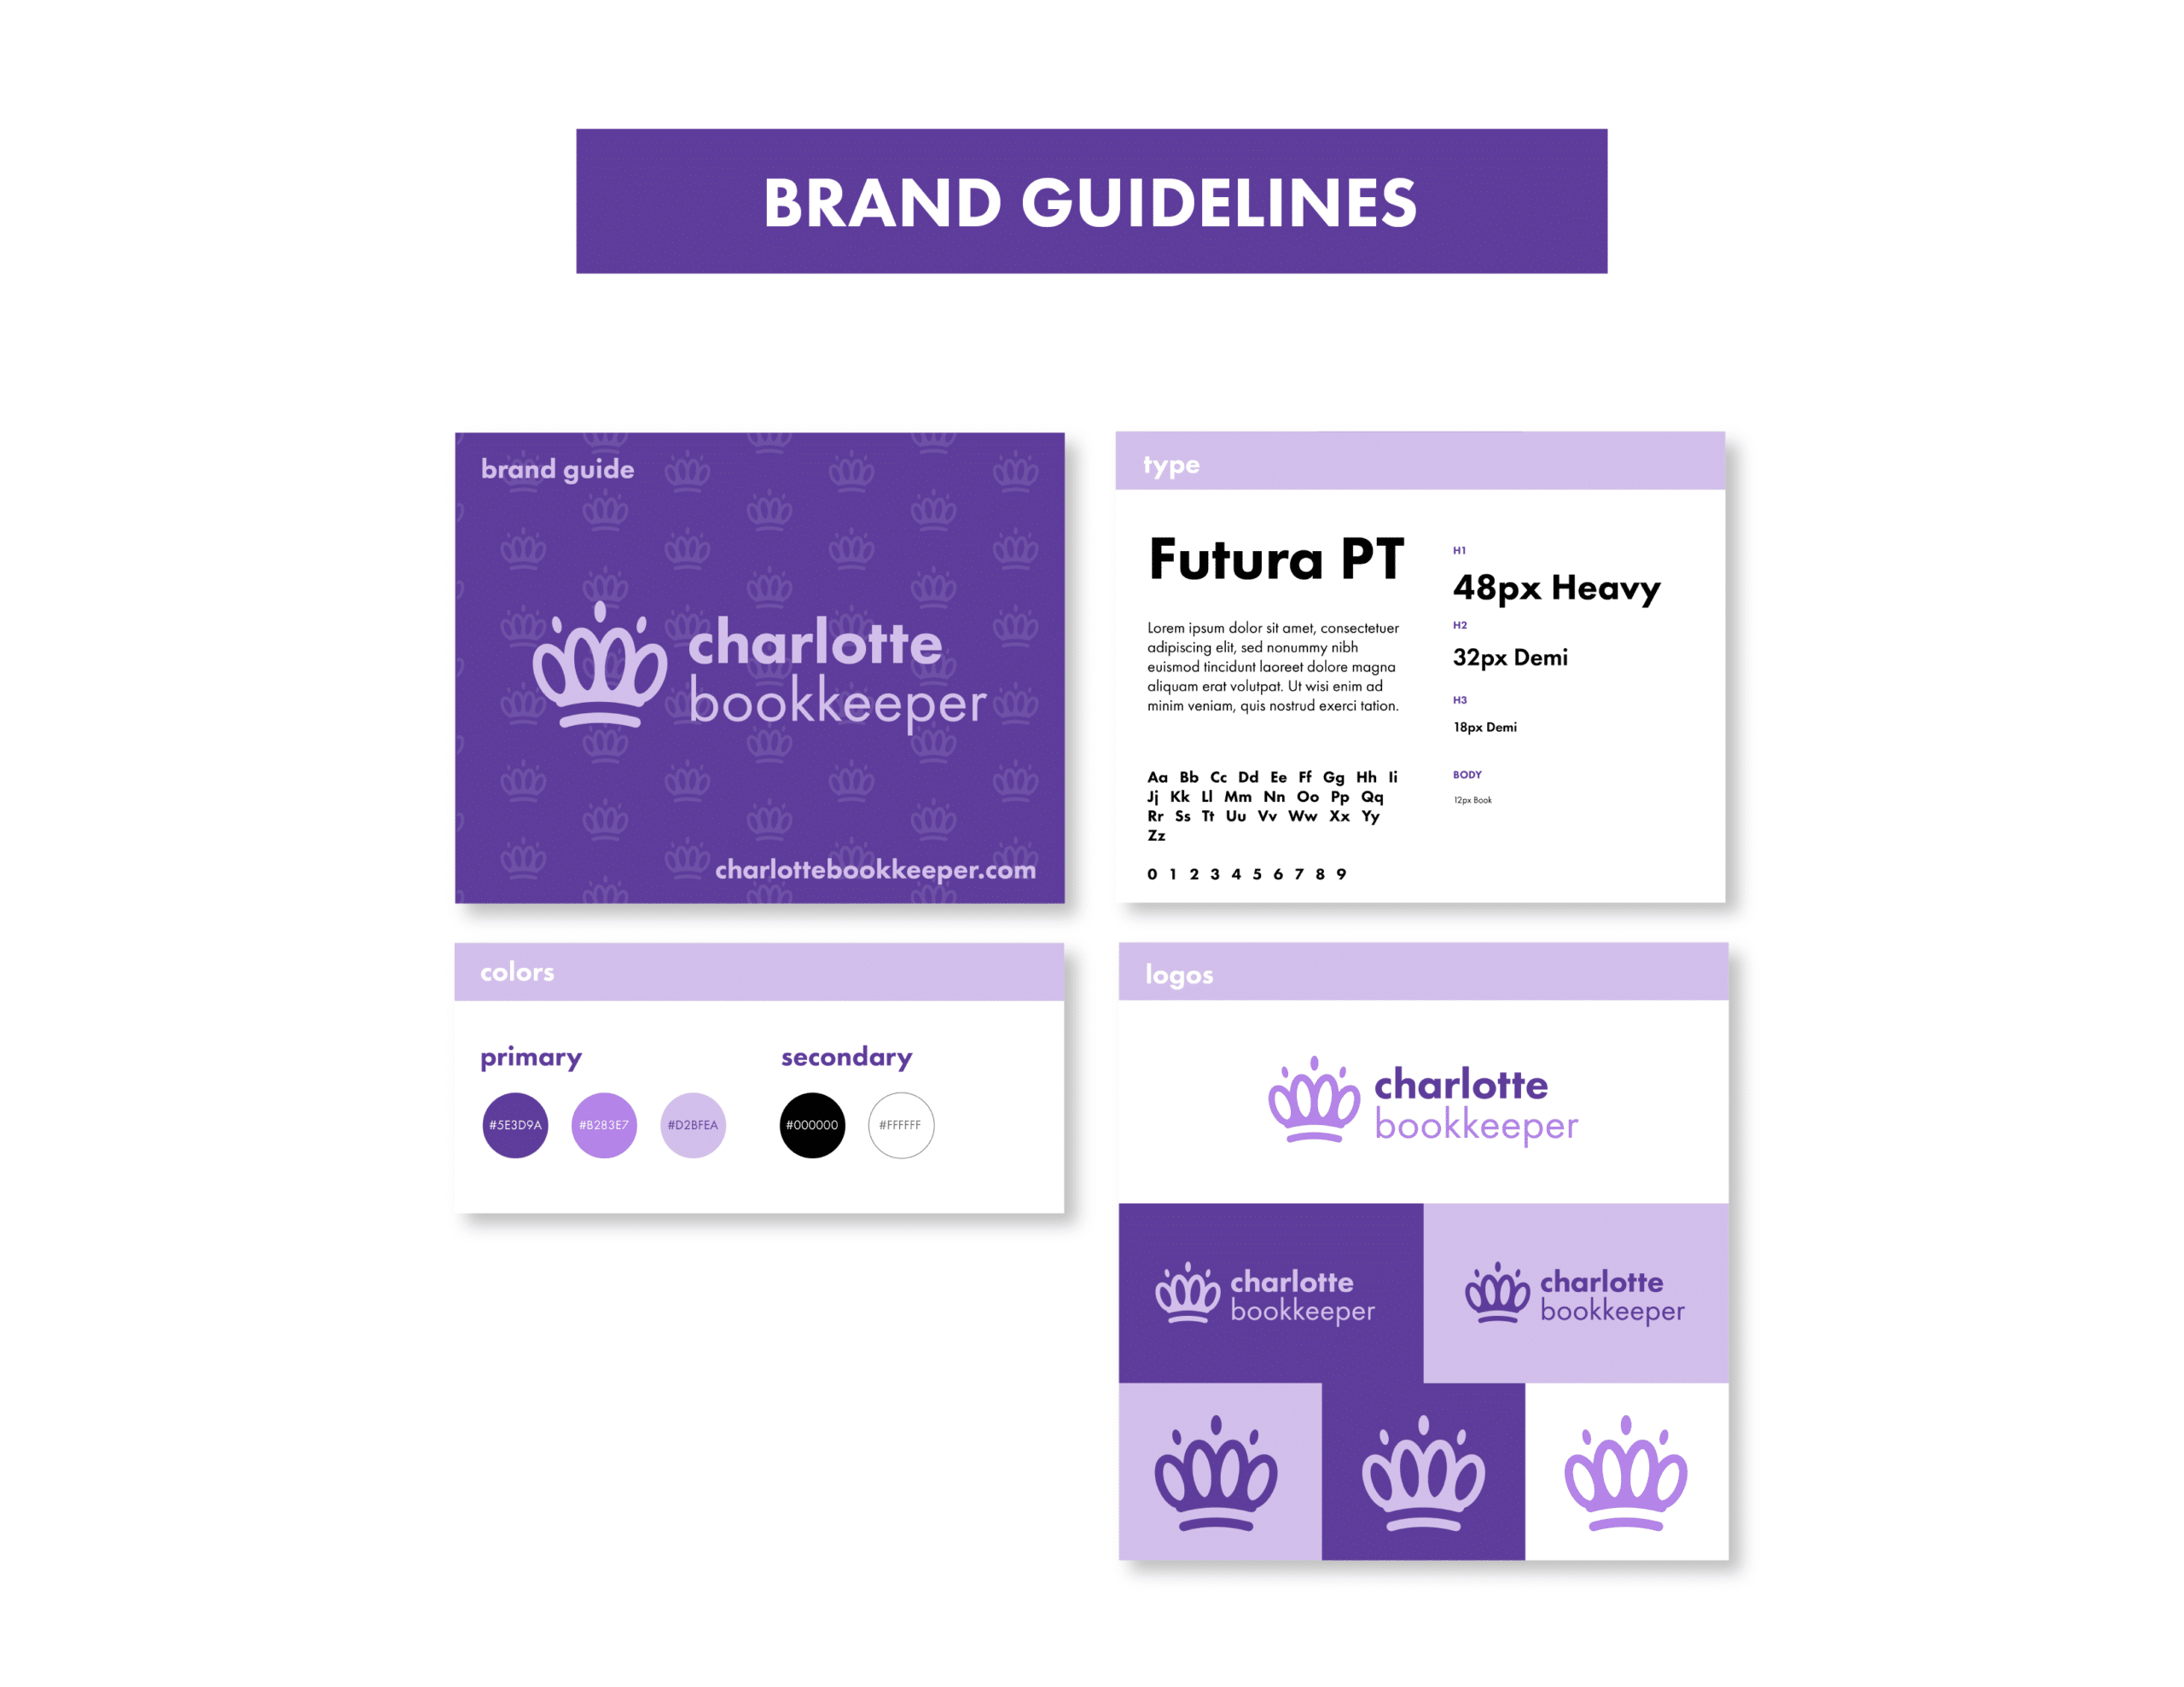 03CharlotteBK_Showcase_Branding Guidelines